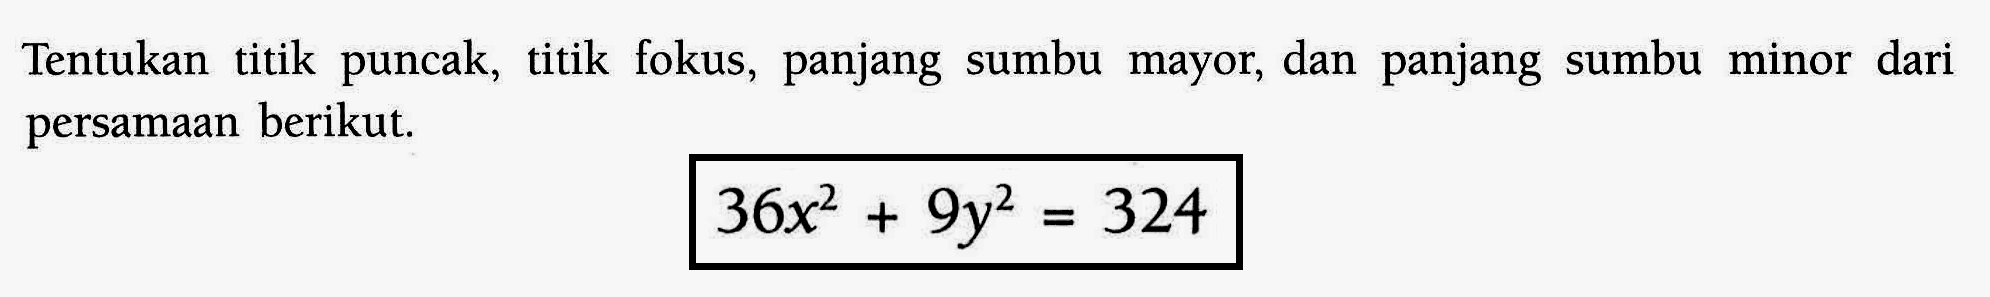 Tentukan titik puncak, titik fokus, panjang sumbu mayor; dan panjang sumbu minor dari persamaan berikut. 36x^2+9y^2=324